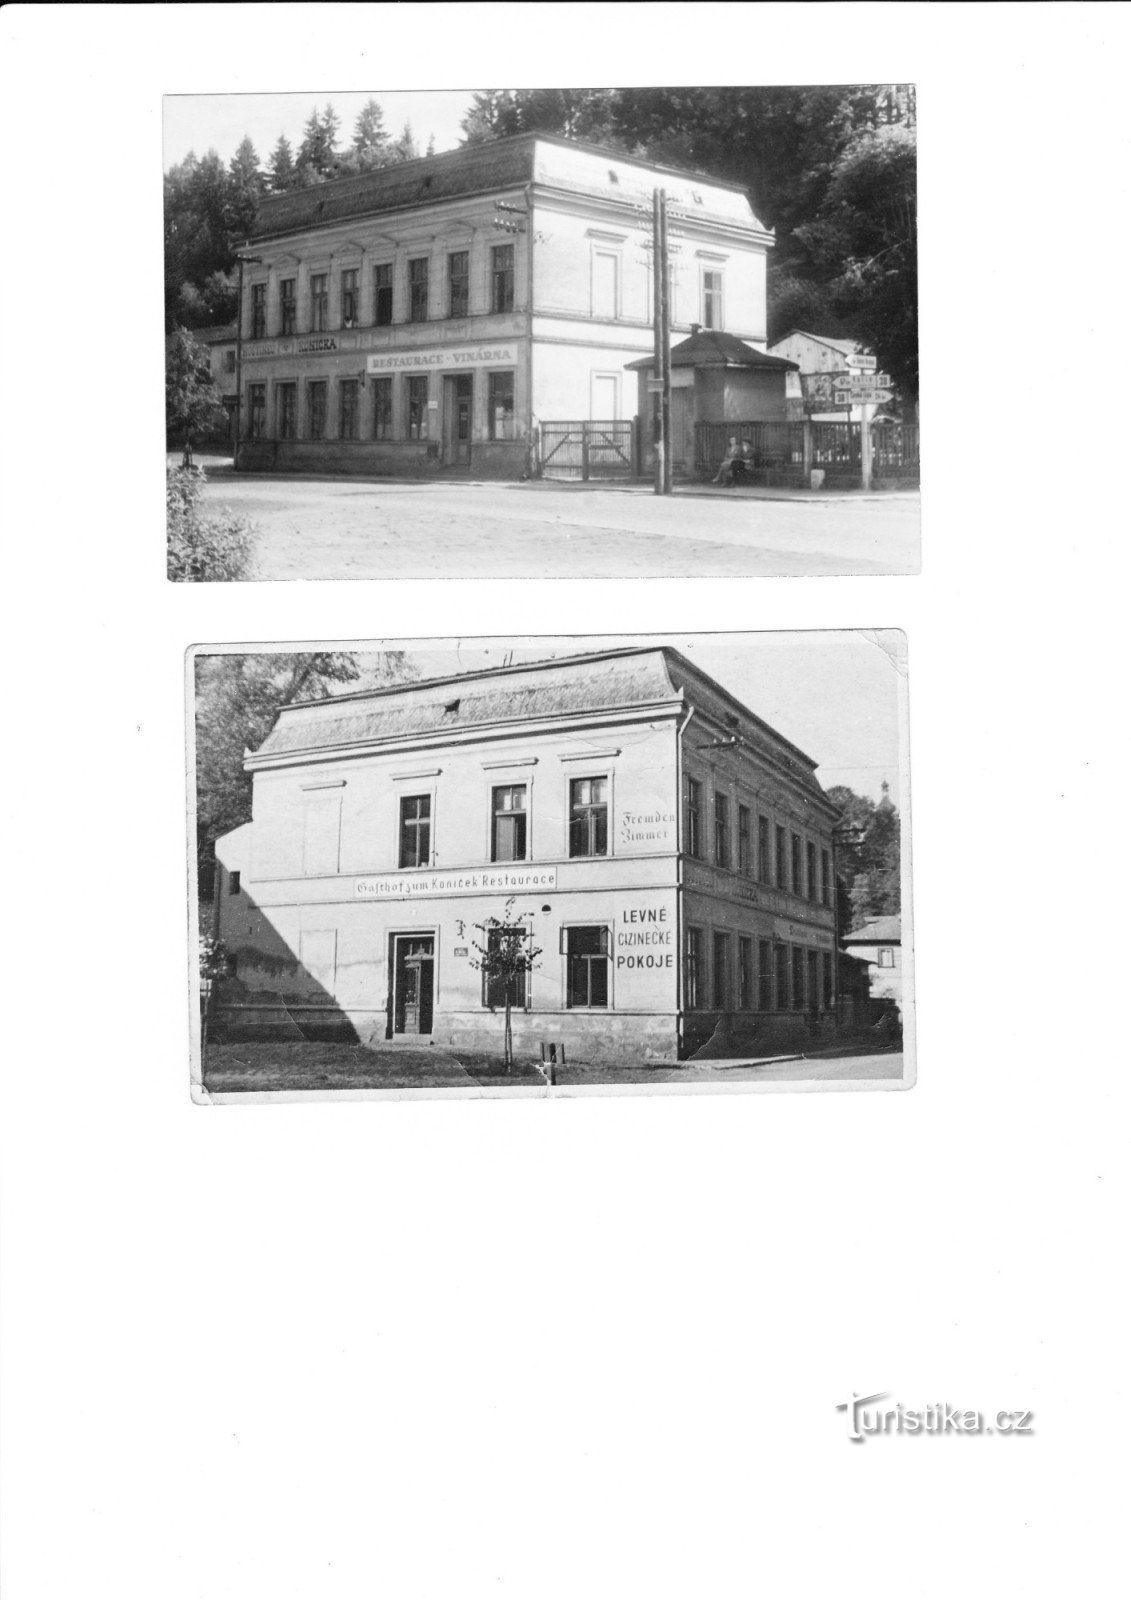 最初的 Koníček 酒店 - Šenekl 先生祖父的财产